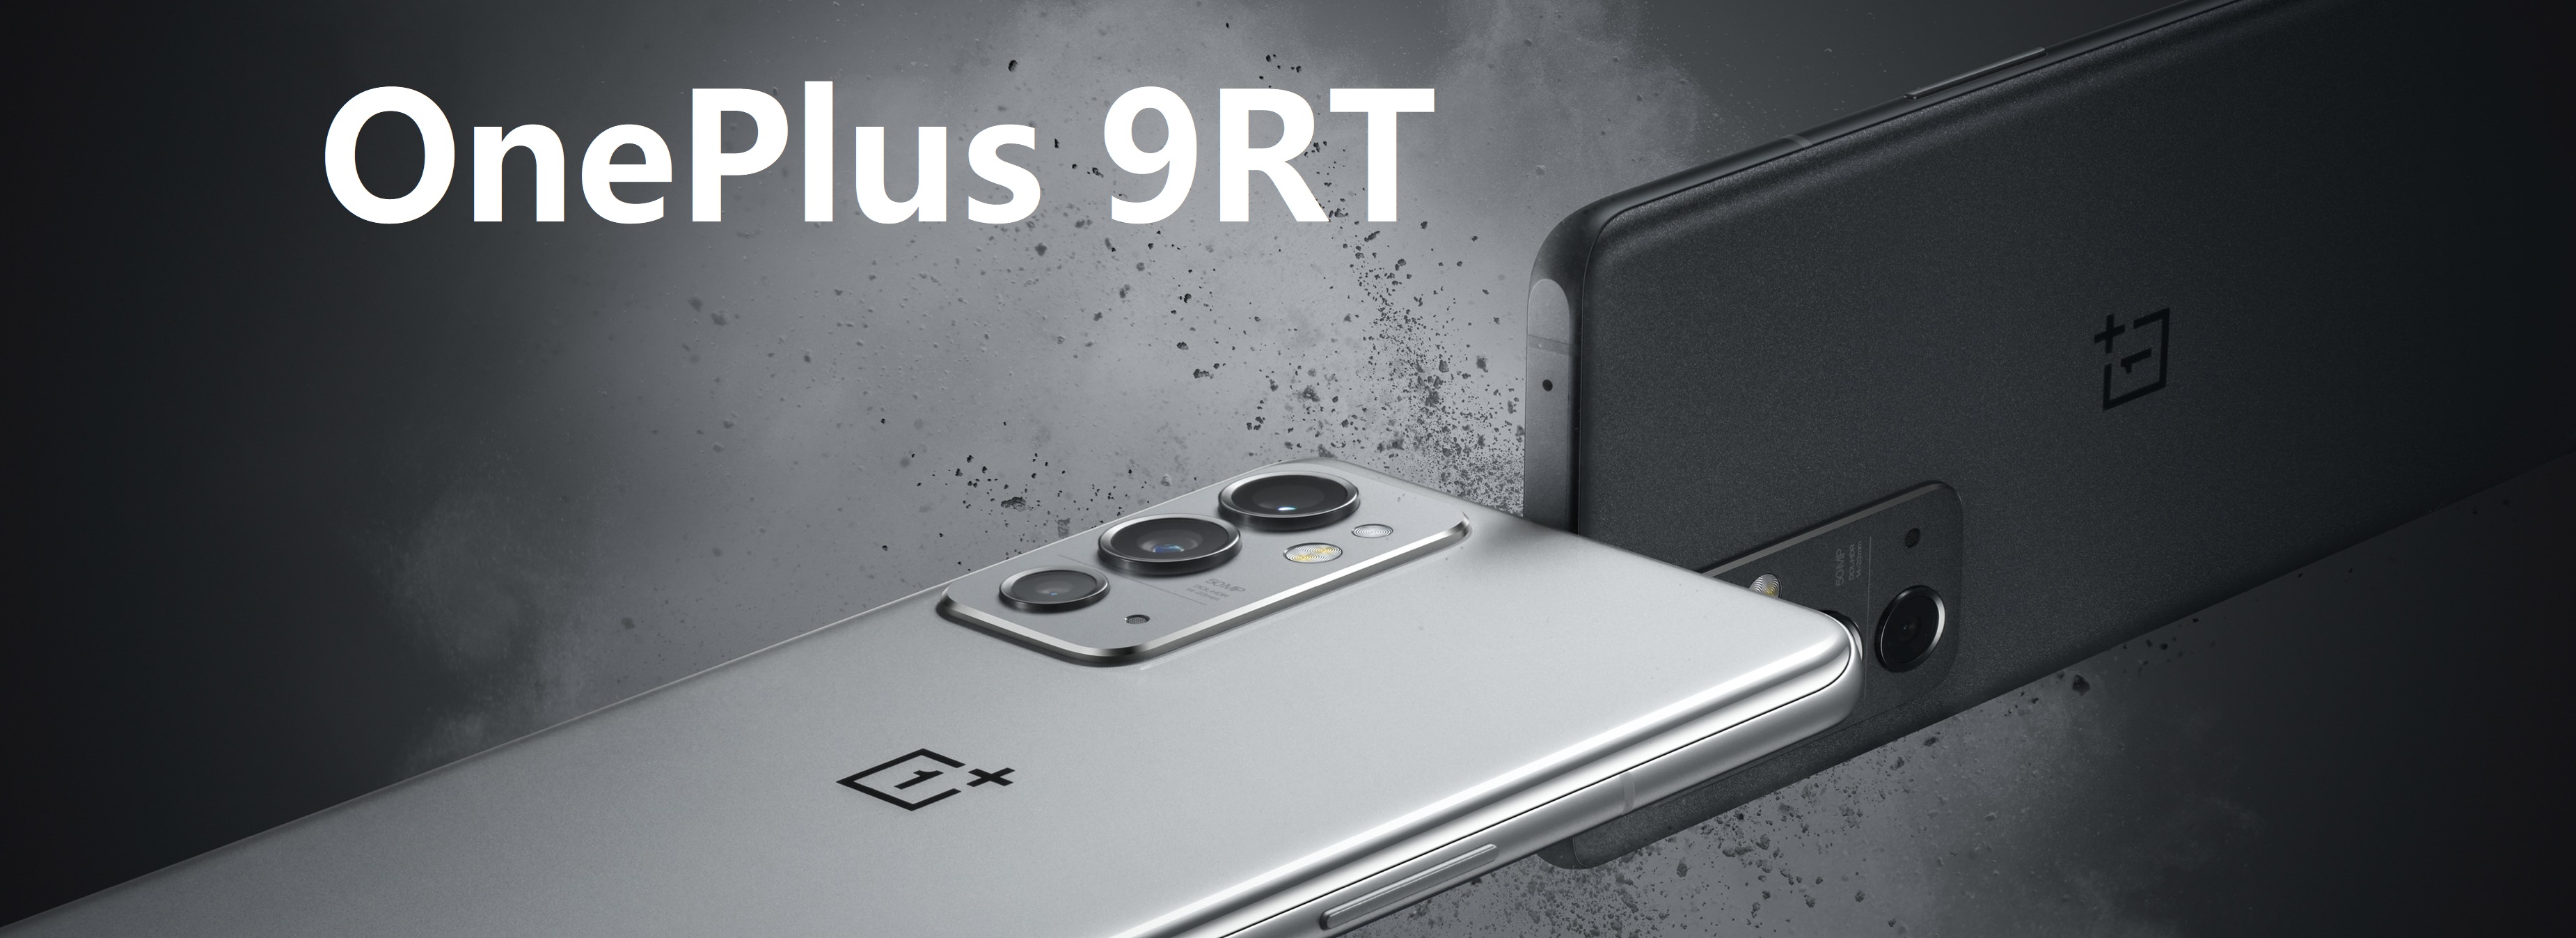 OnePlus-9RT-01.jpg